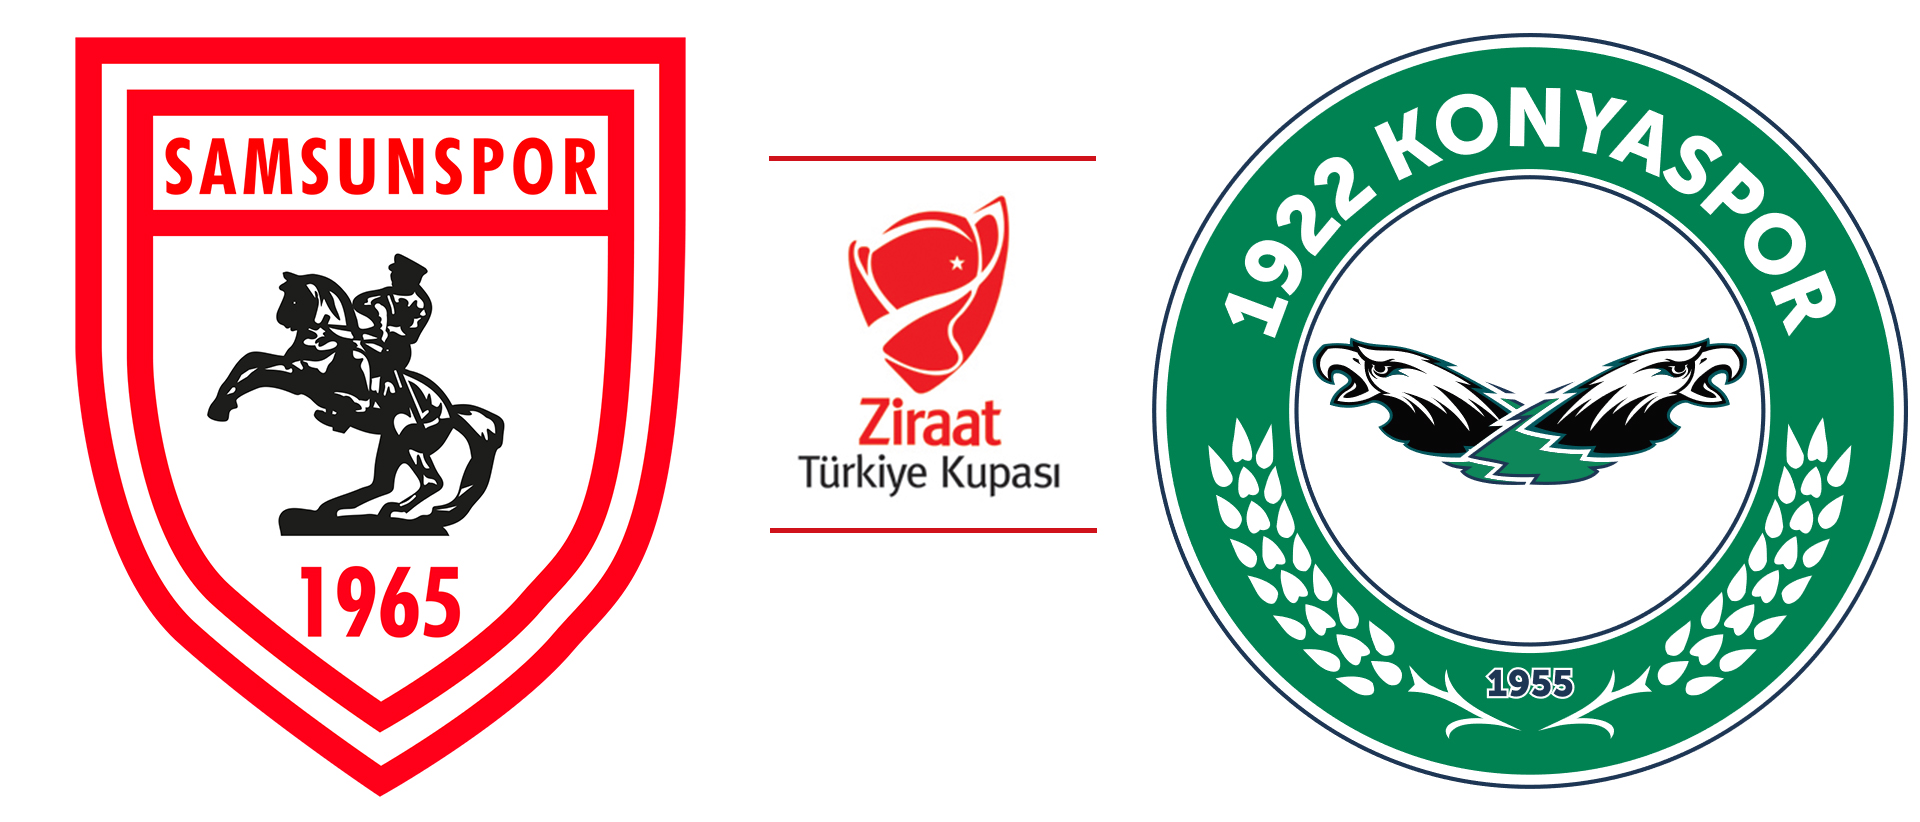 Ziraat Türkiye Kupası'nda 3. tur mücadelesi yarın başlıyor